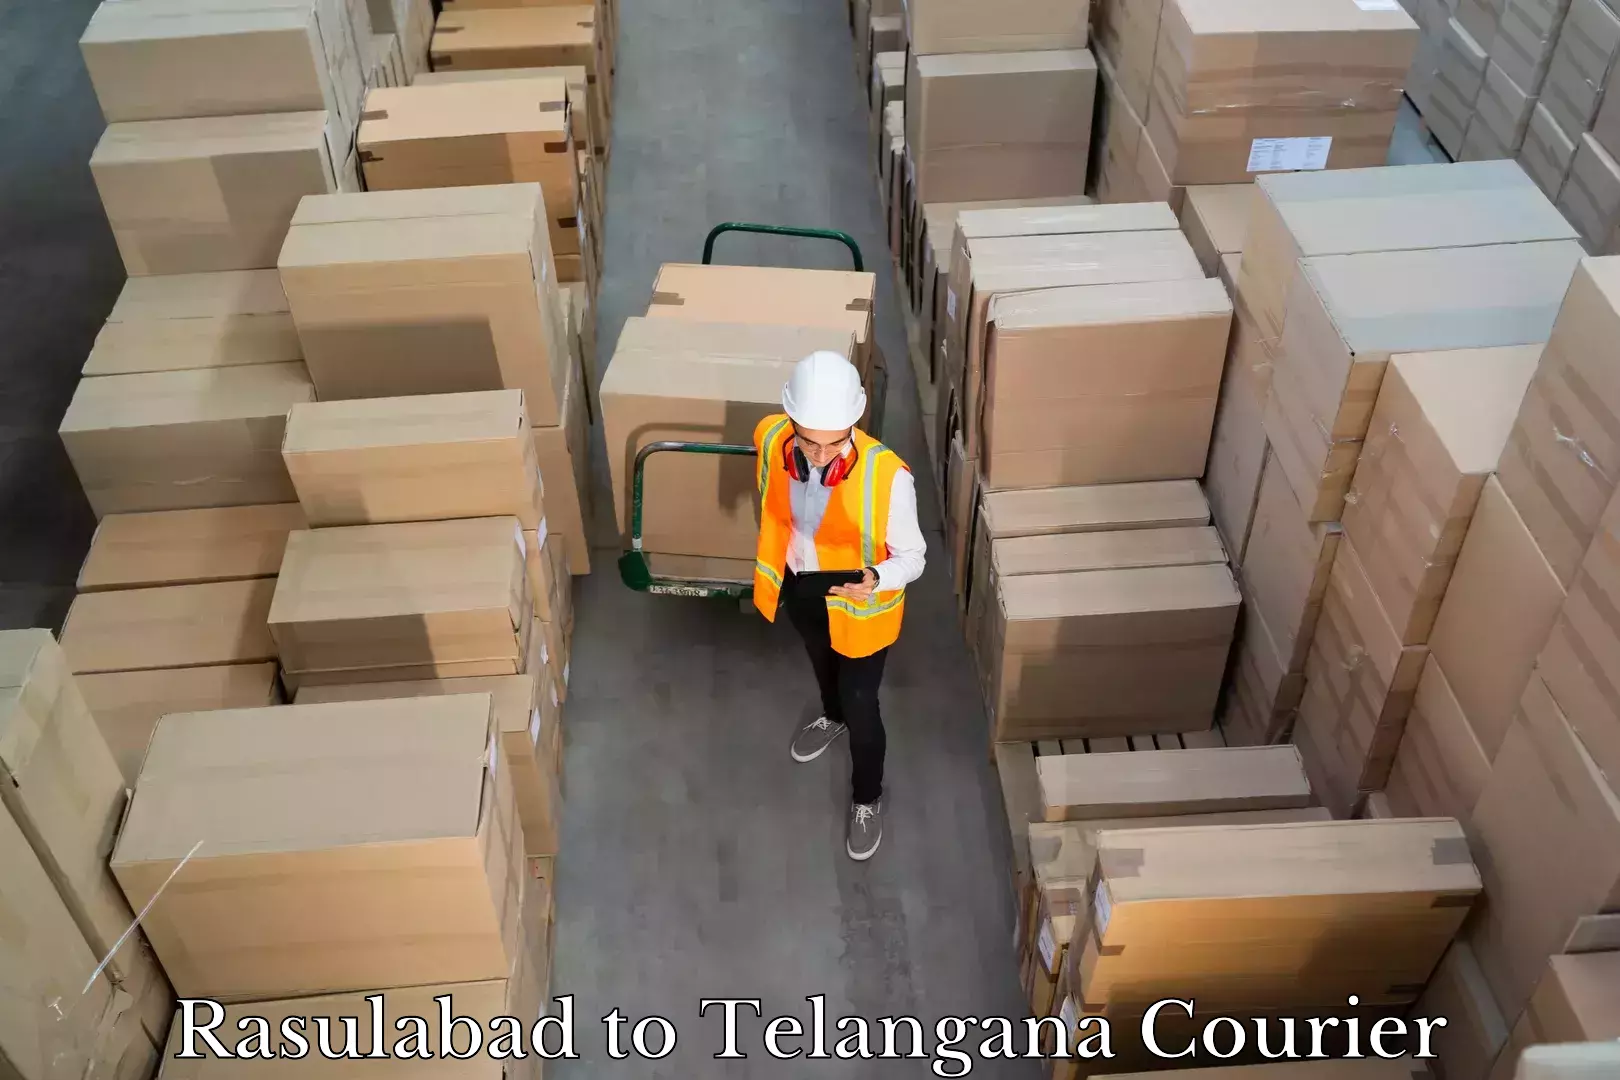 Luggage transport company Rasulabad to Telangana